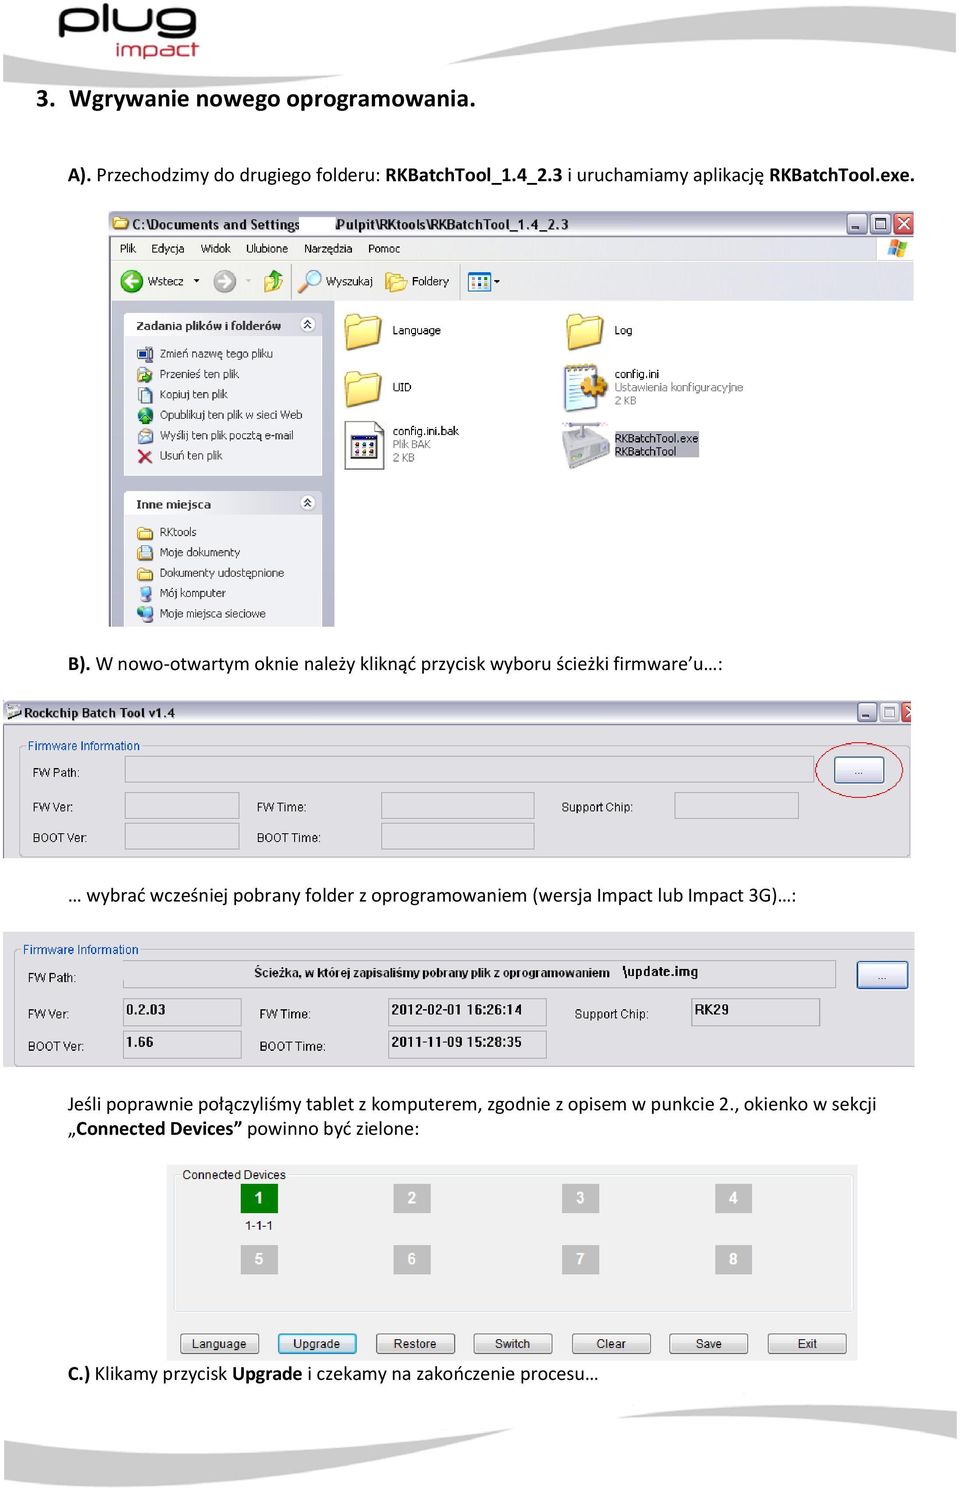 W nowo-otwartym oknie należy kliknąd przycisk wyboru ścieżki firmware u : wybrad wcześniej pobrany folder z oprogramowaniem